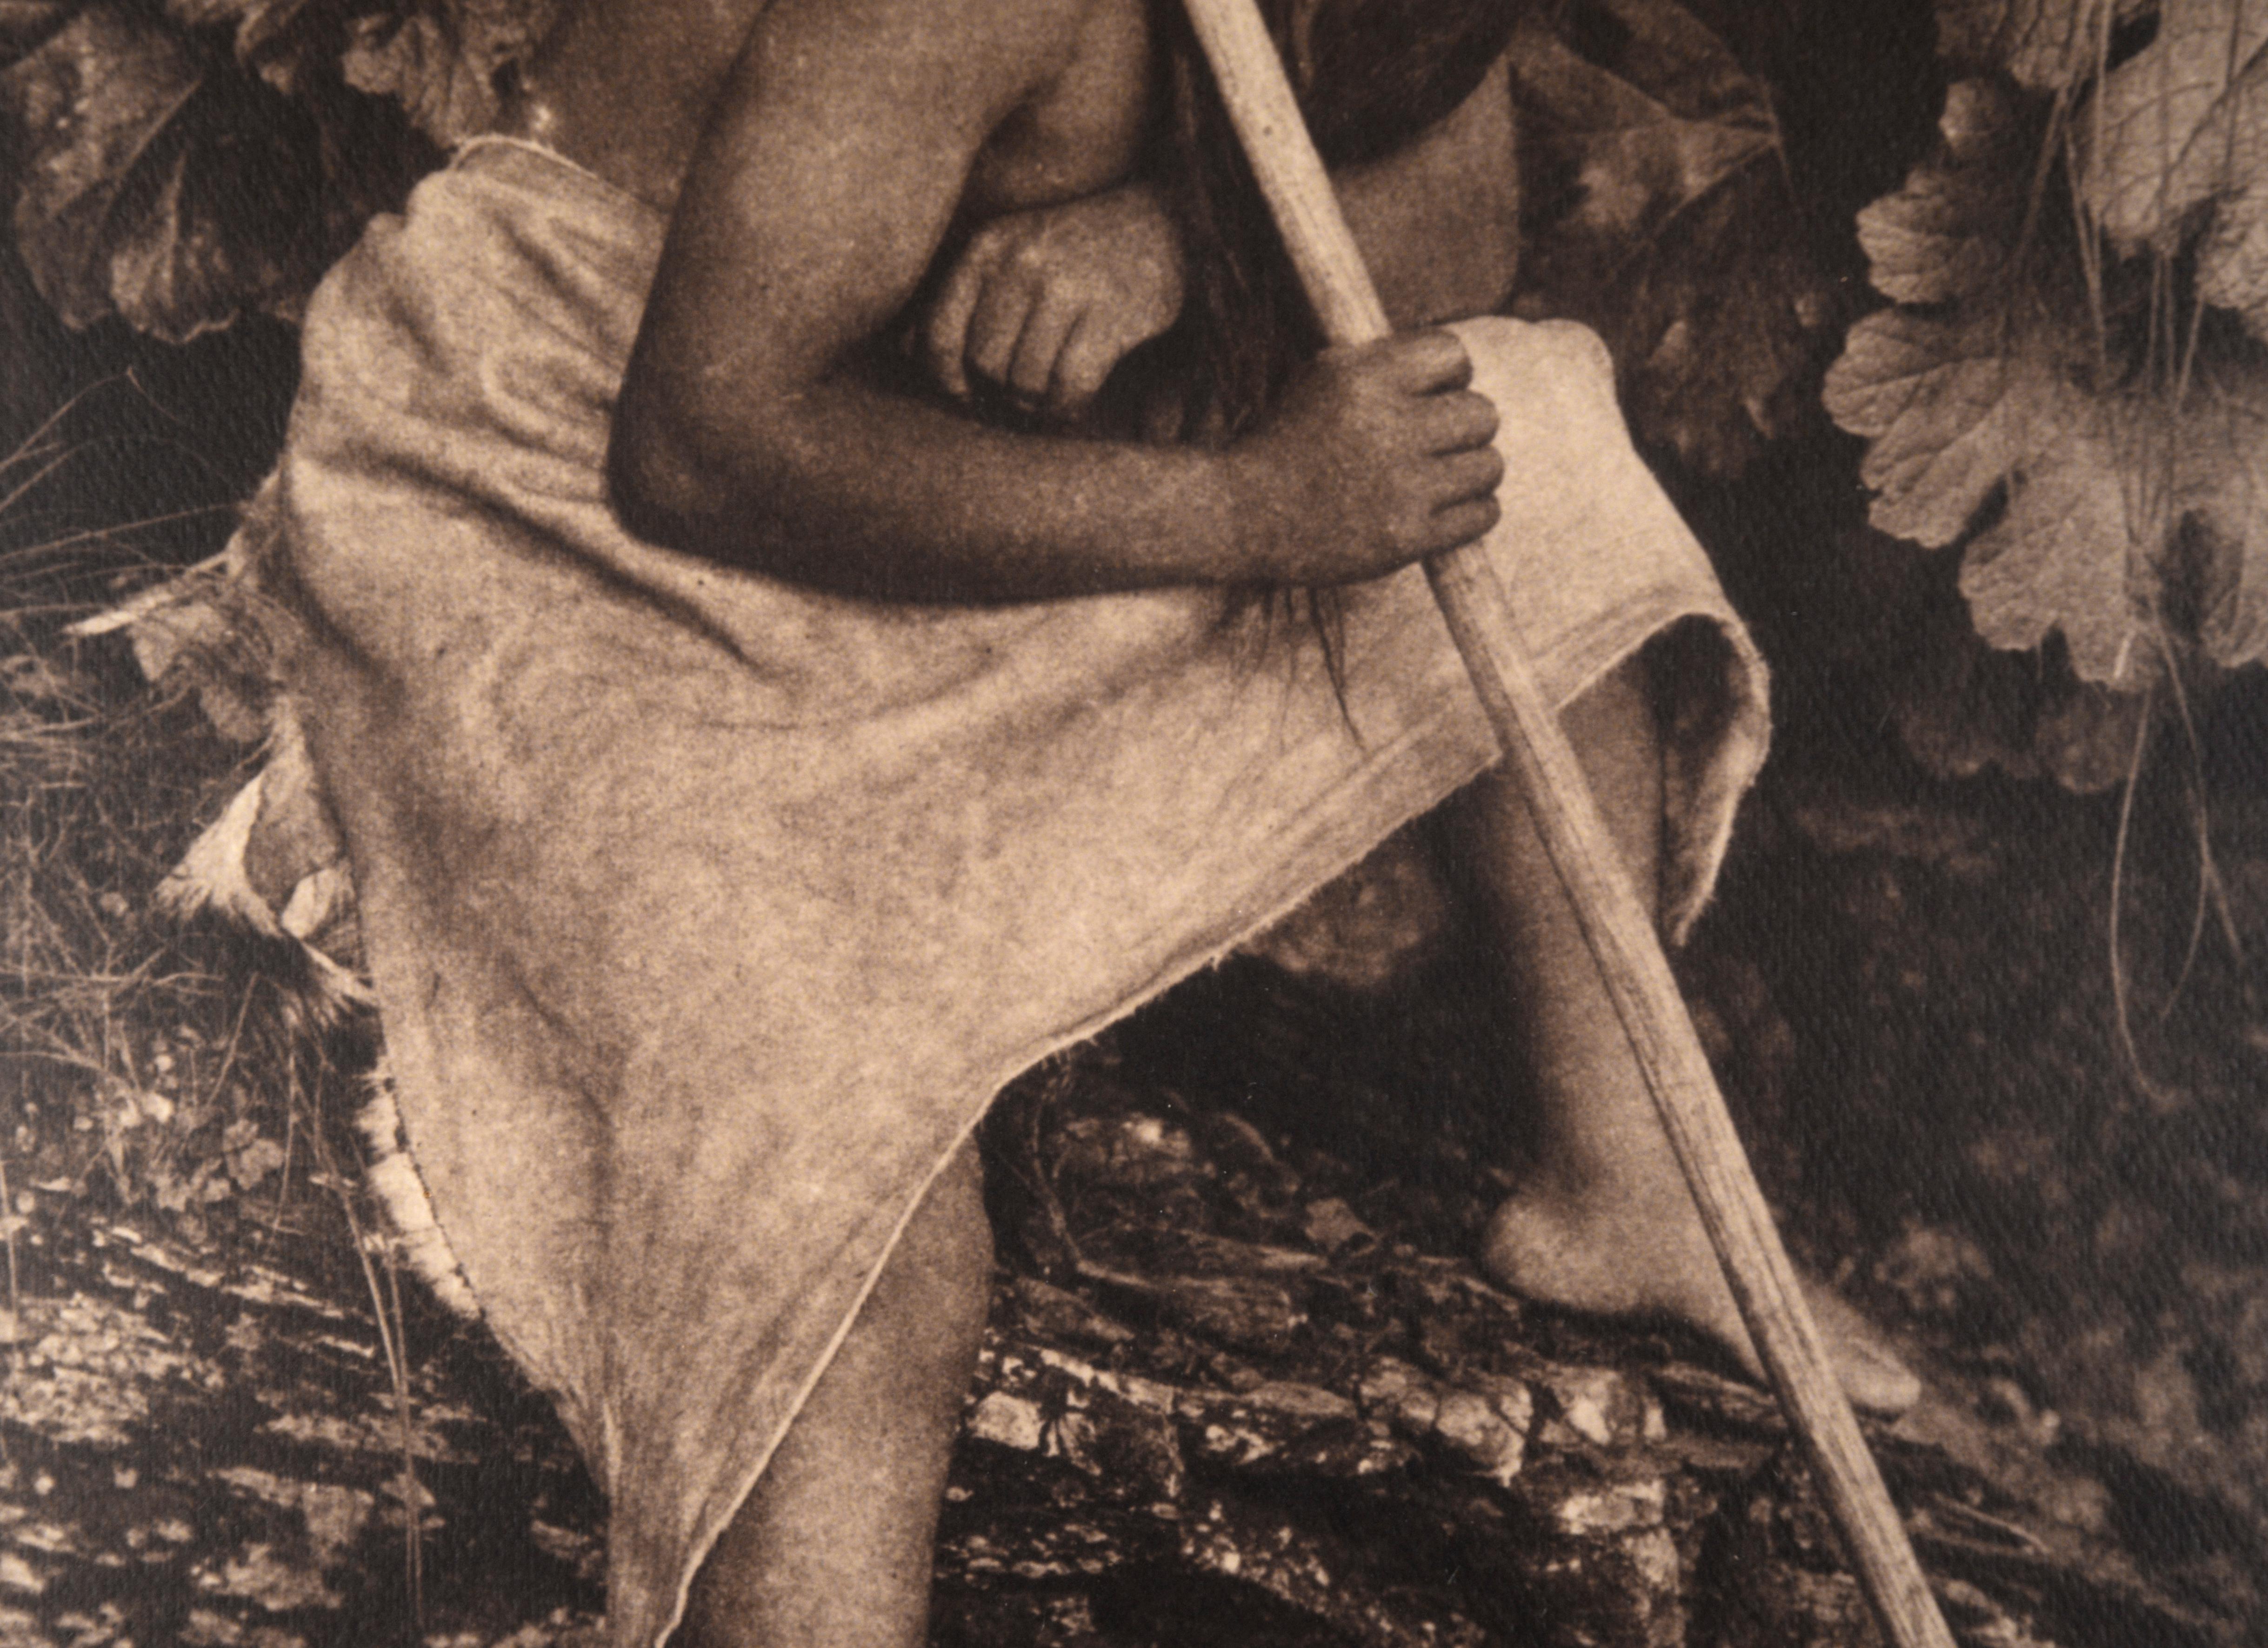 Tirage photographique argentique et sépia d'un pêcheur au harpon indigène par Edward Sheriff Curtis, image d'environ 1901 (Américain, 1868-1952), en tant que copie de 1974 (et imprimée à partir de négatifs dérivés) de la plaque originale en cuivre